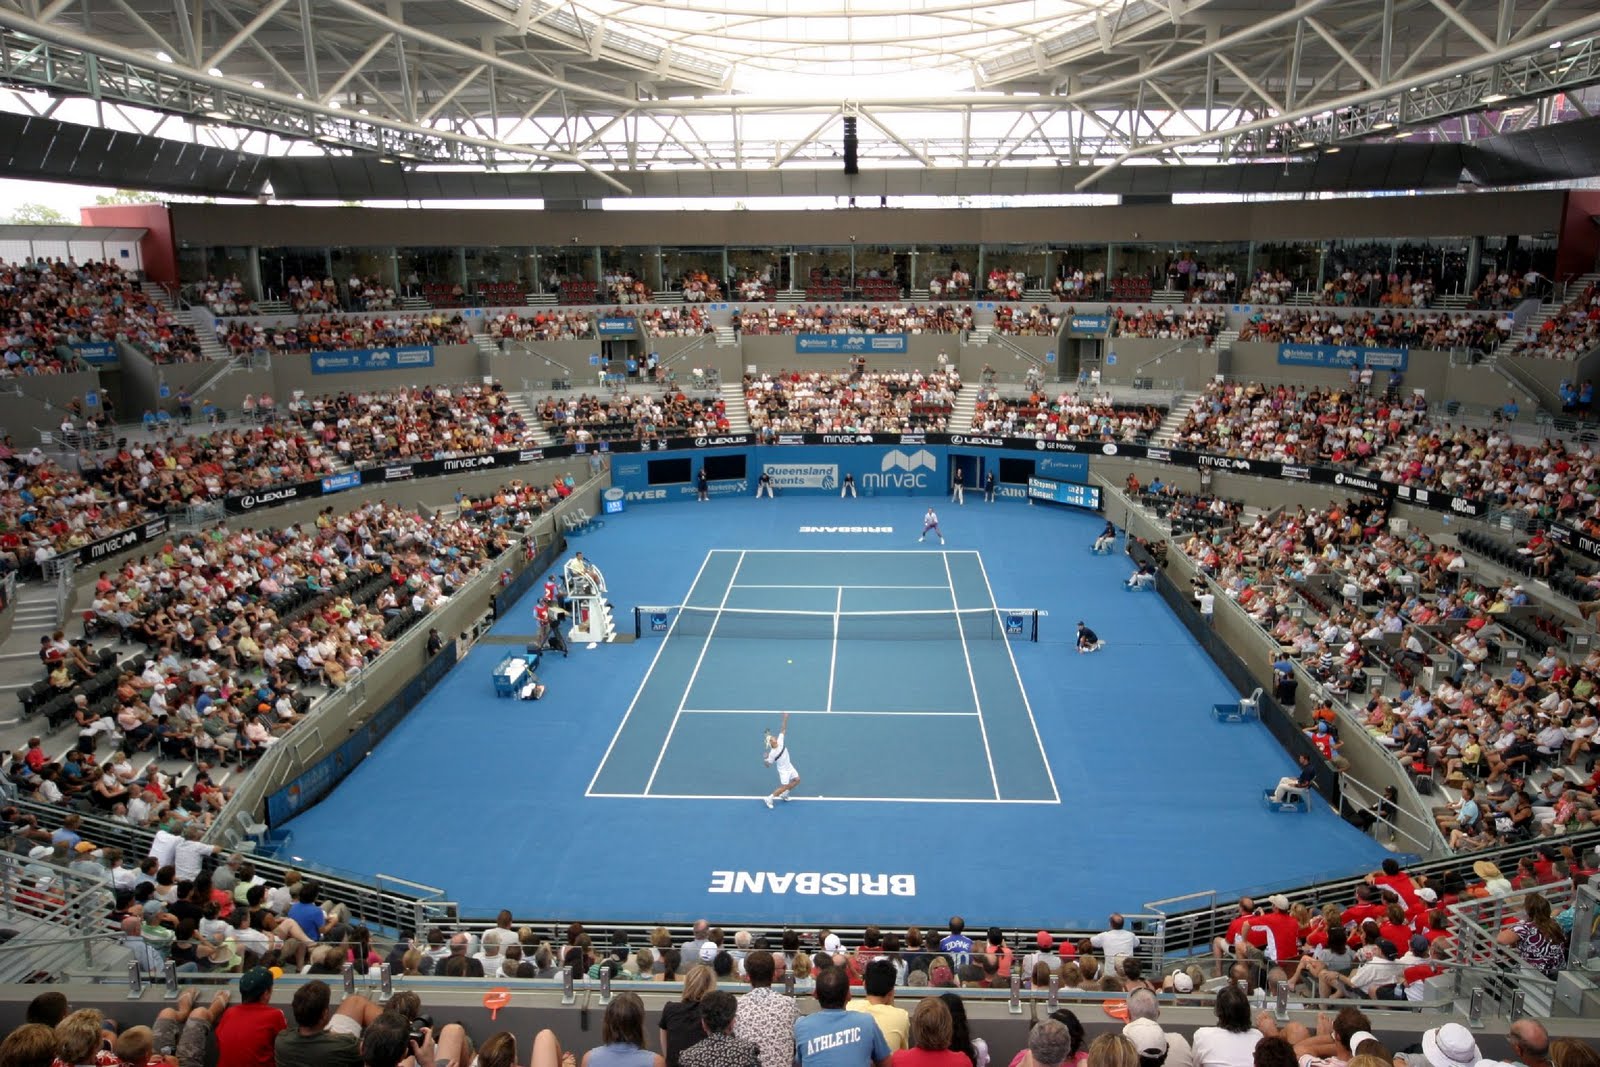 Brisbane Tennis